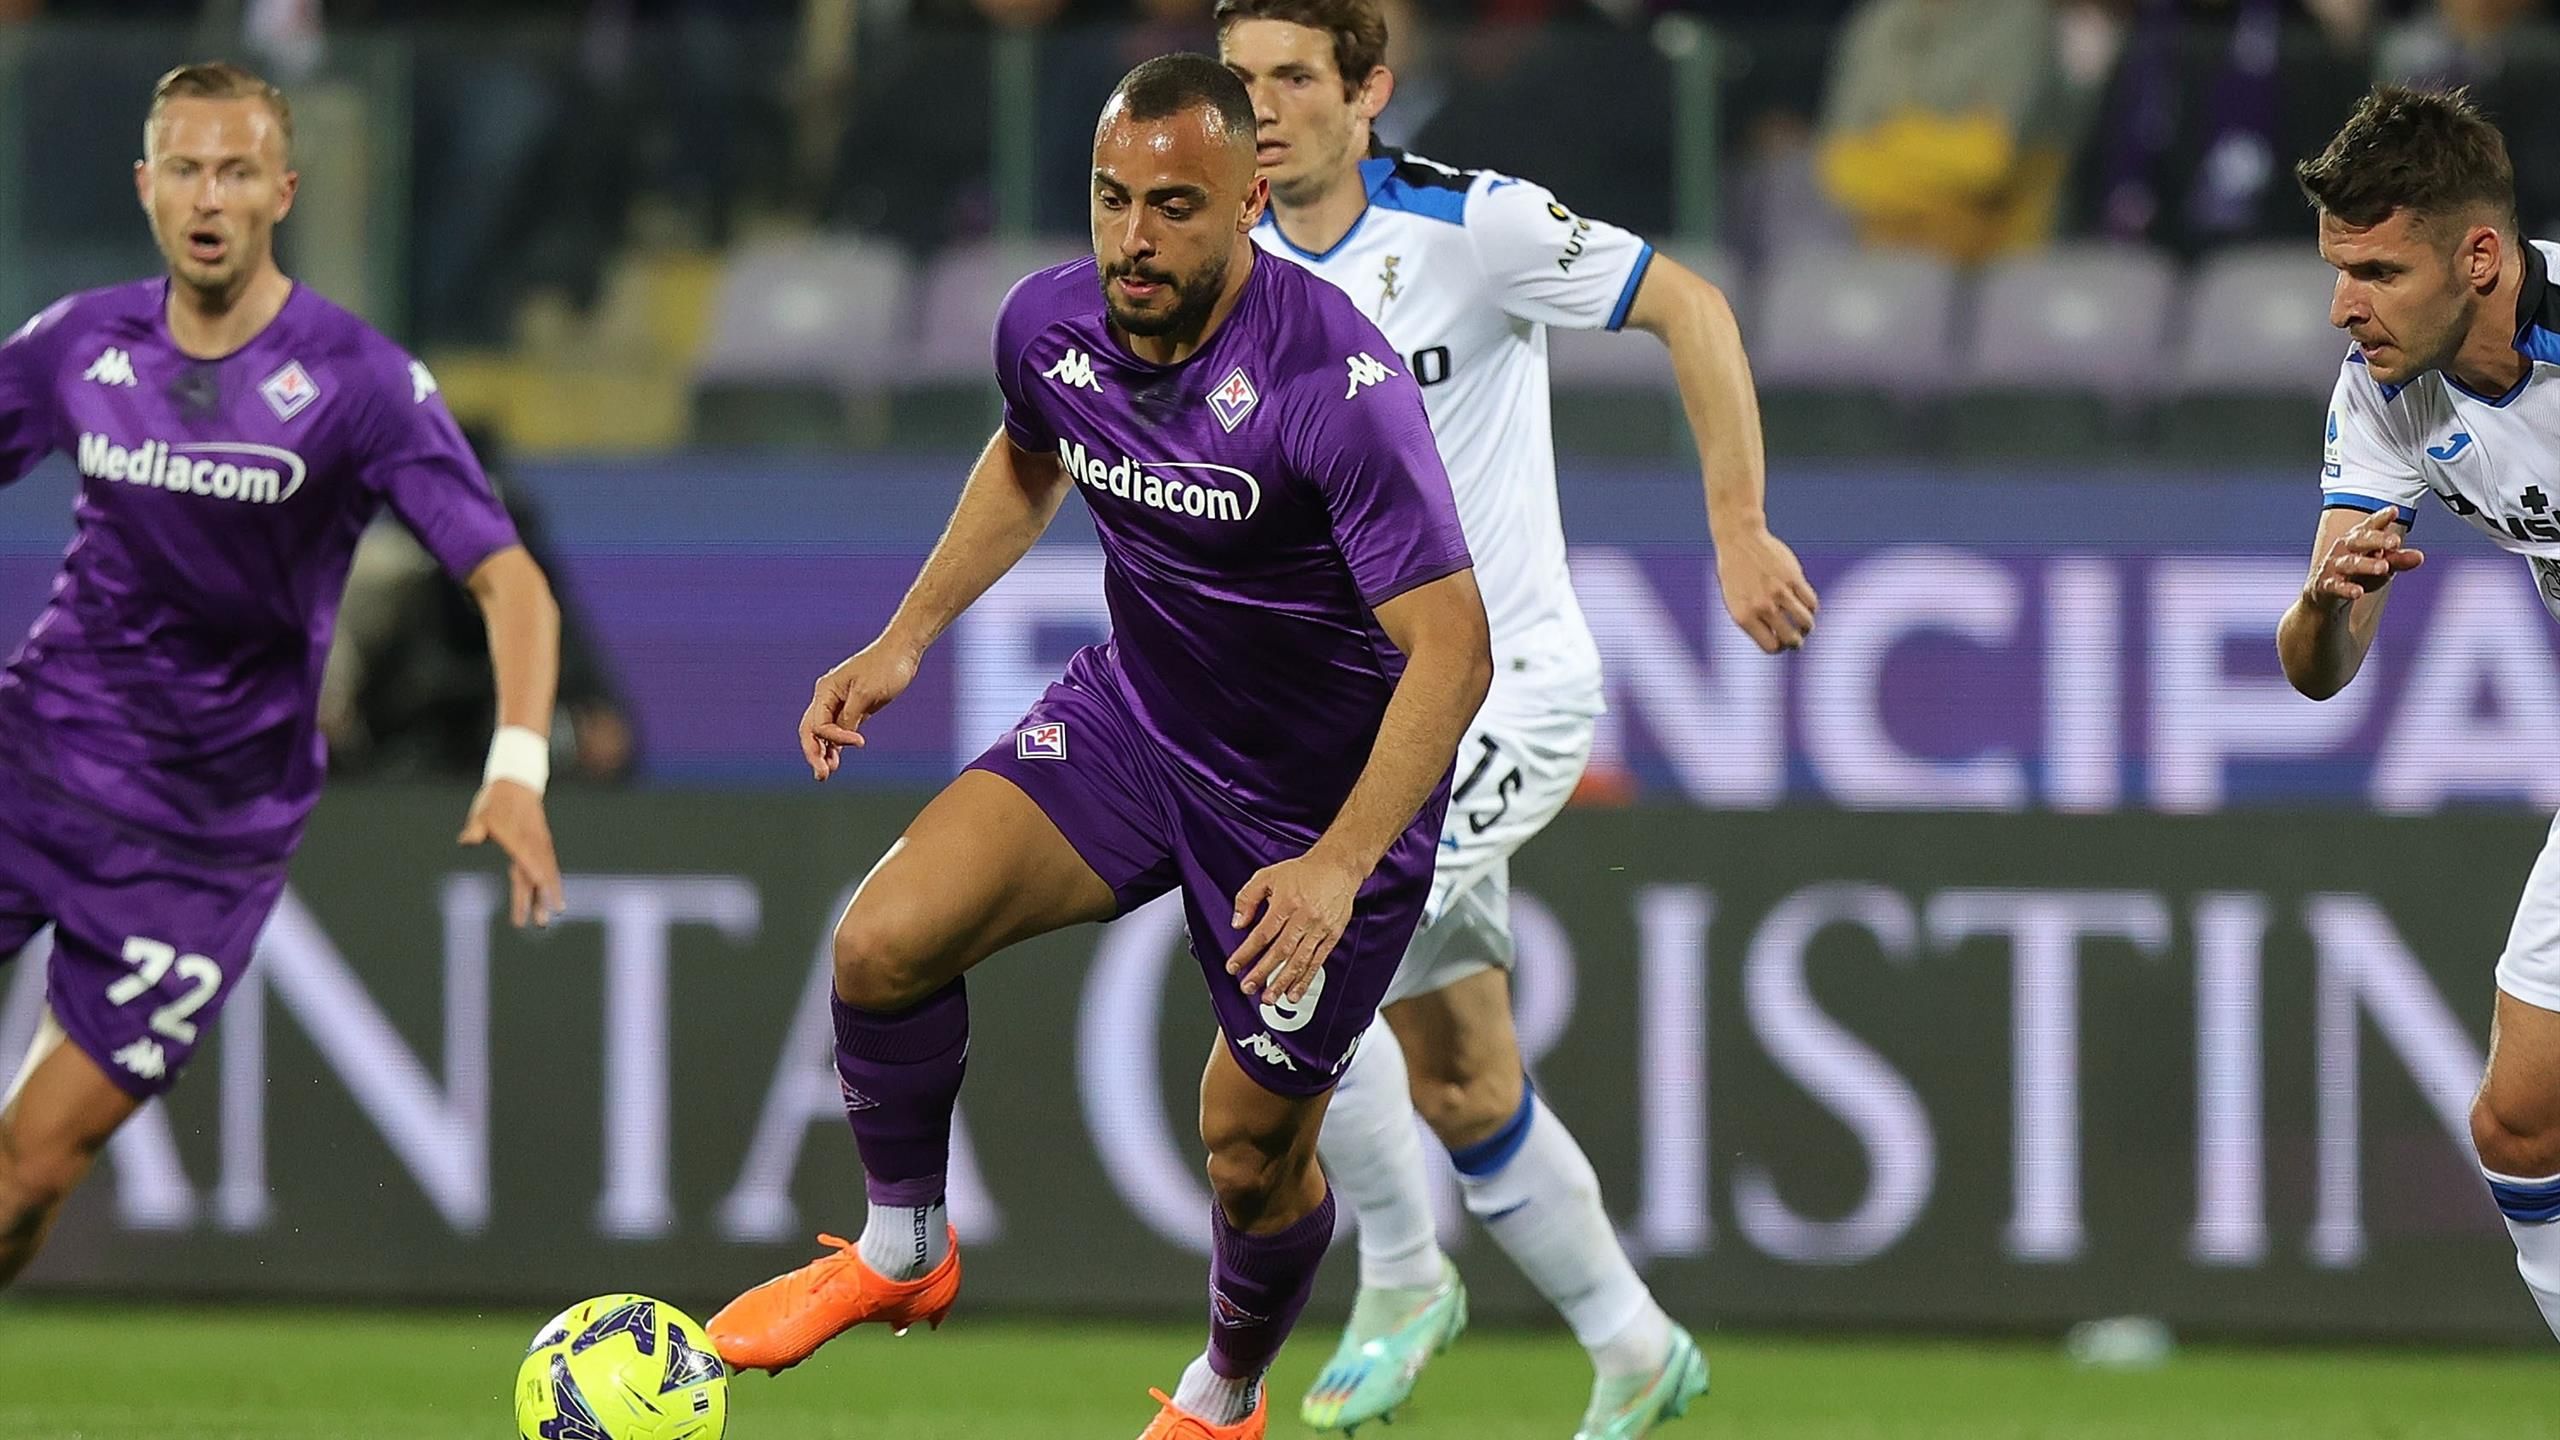 Fiorentina-Ferencvaros, pagelle VN: Nico tutto cuore, bene i cambi